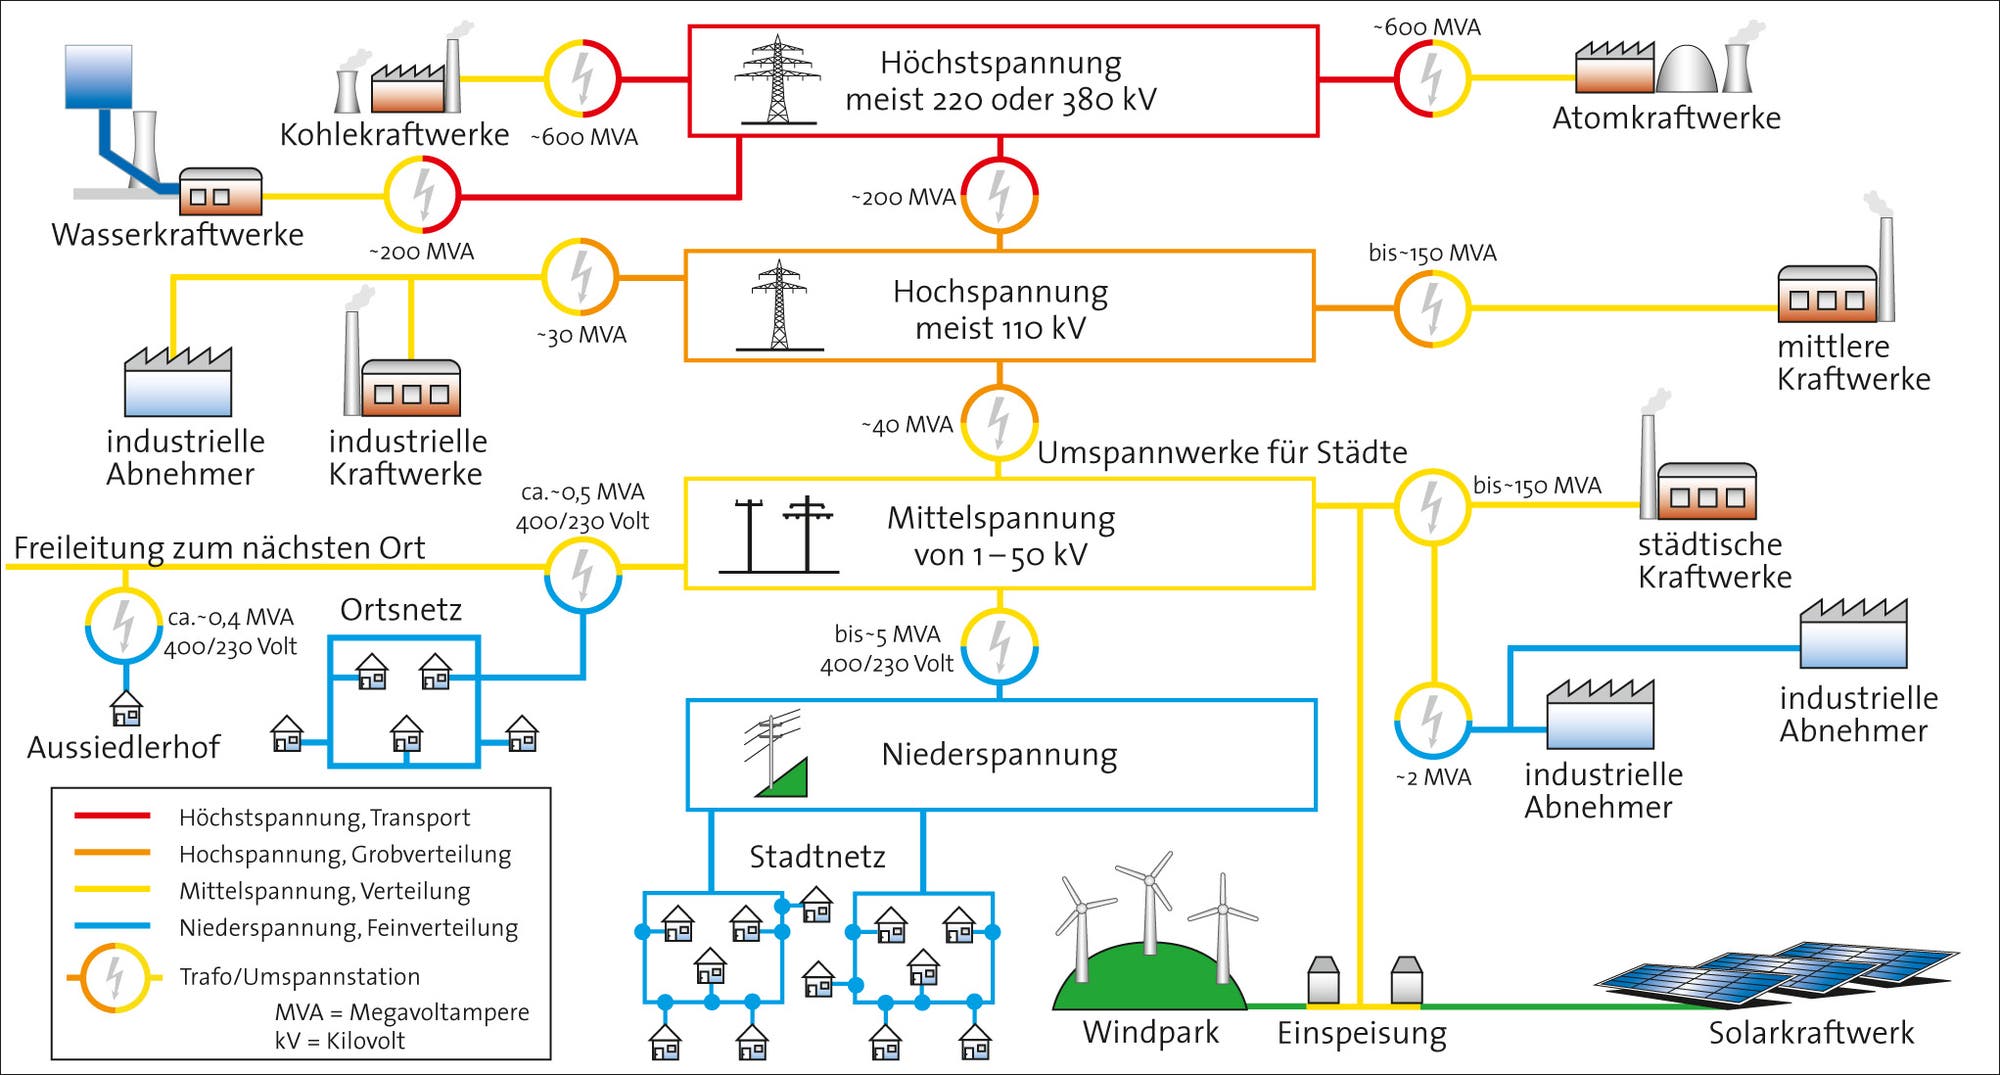 Komplexes Netzwerk: Die Stromverteilung 